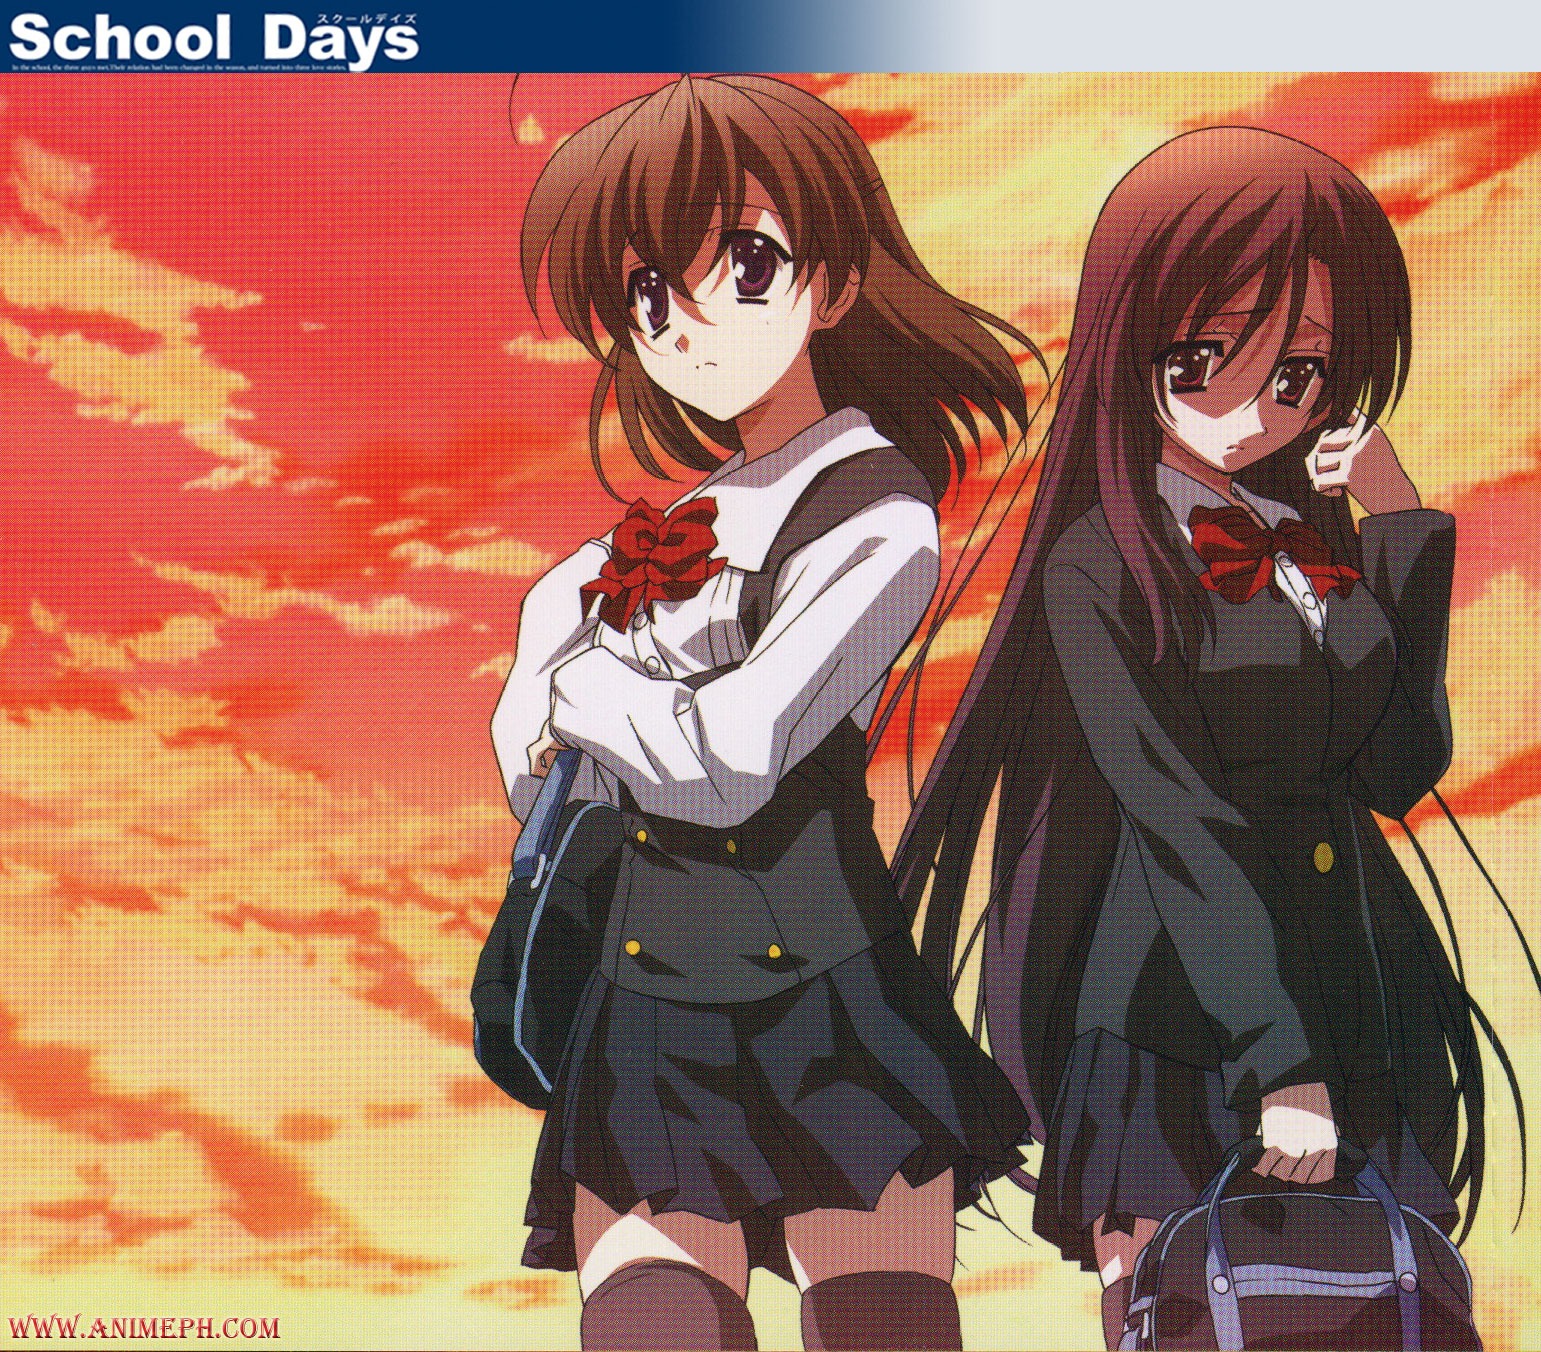 صور بنات انمى مدراسية  Wallpaper-school-days-anime